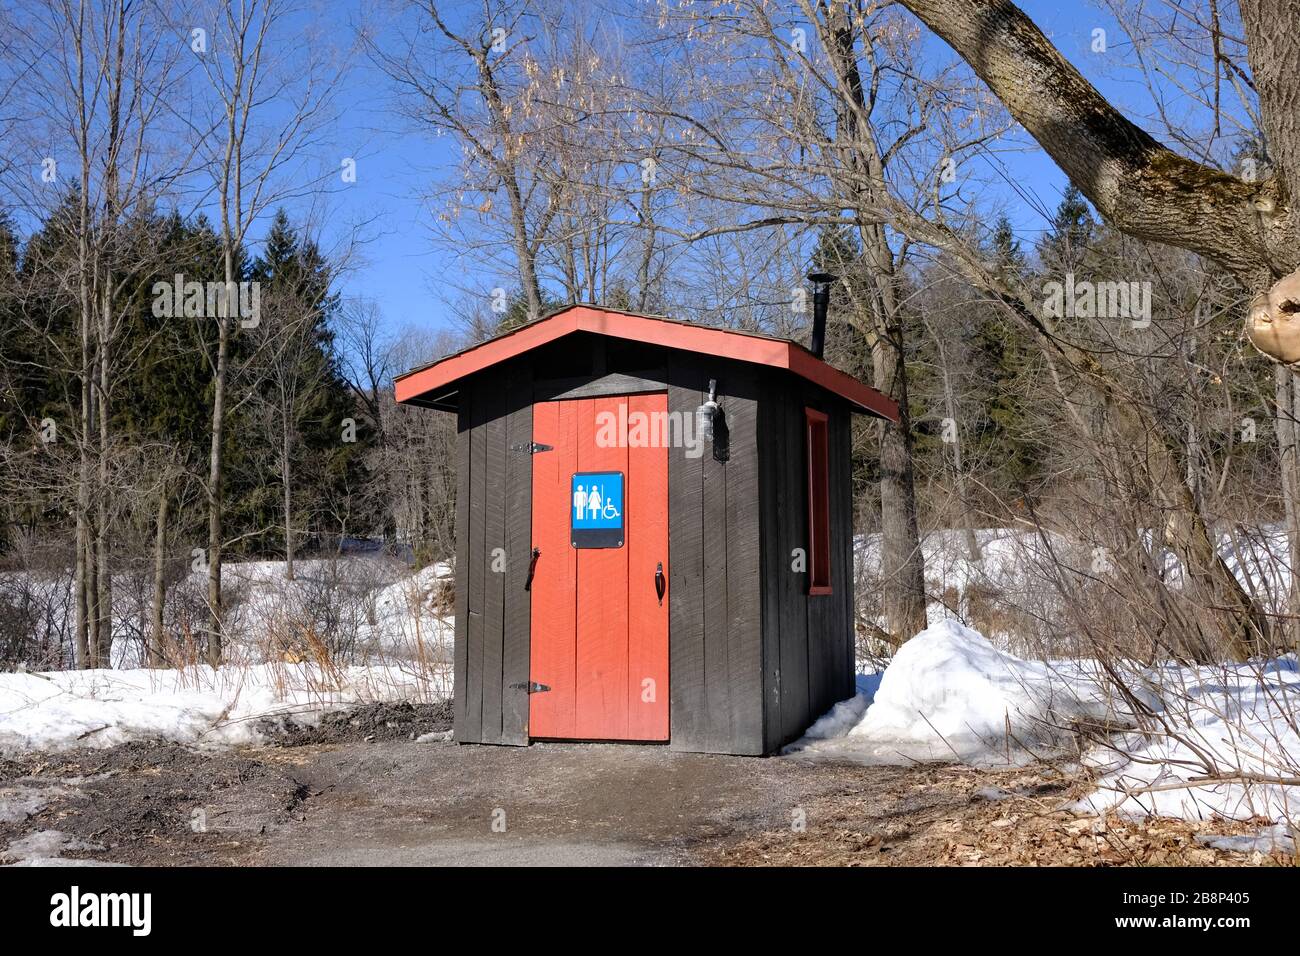 Sehr praktische rote und braune öffentliche unisex-toilette (Outhouse) inmitten eines verschneiten Gatineau Parks, Quebec, Kanada. Stockfoto